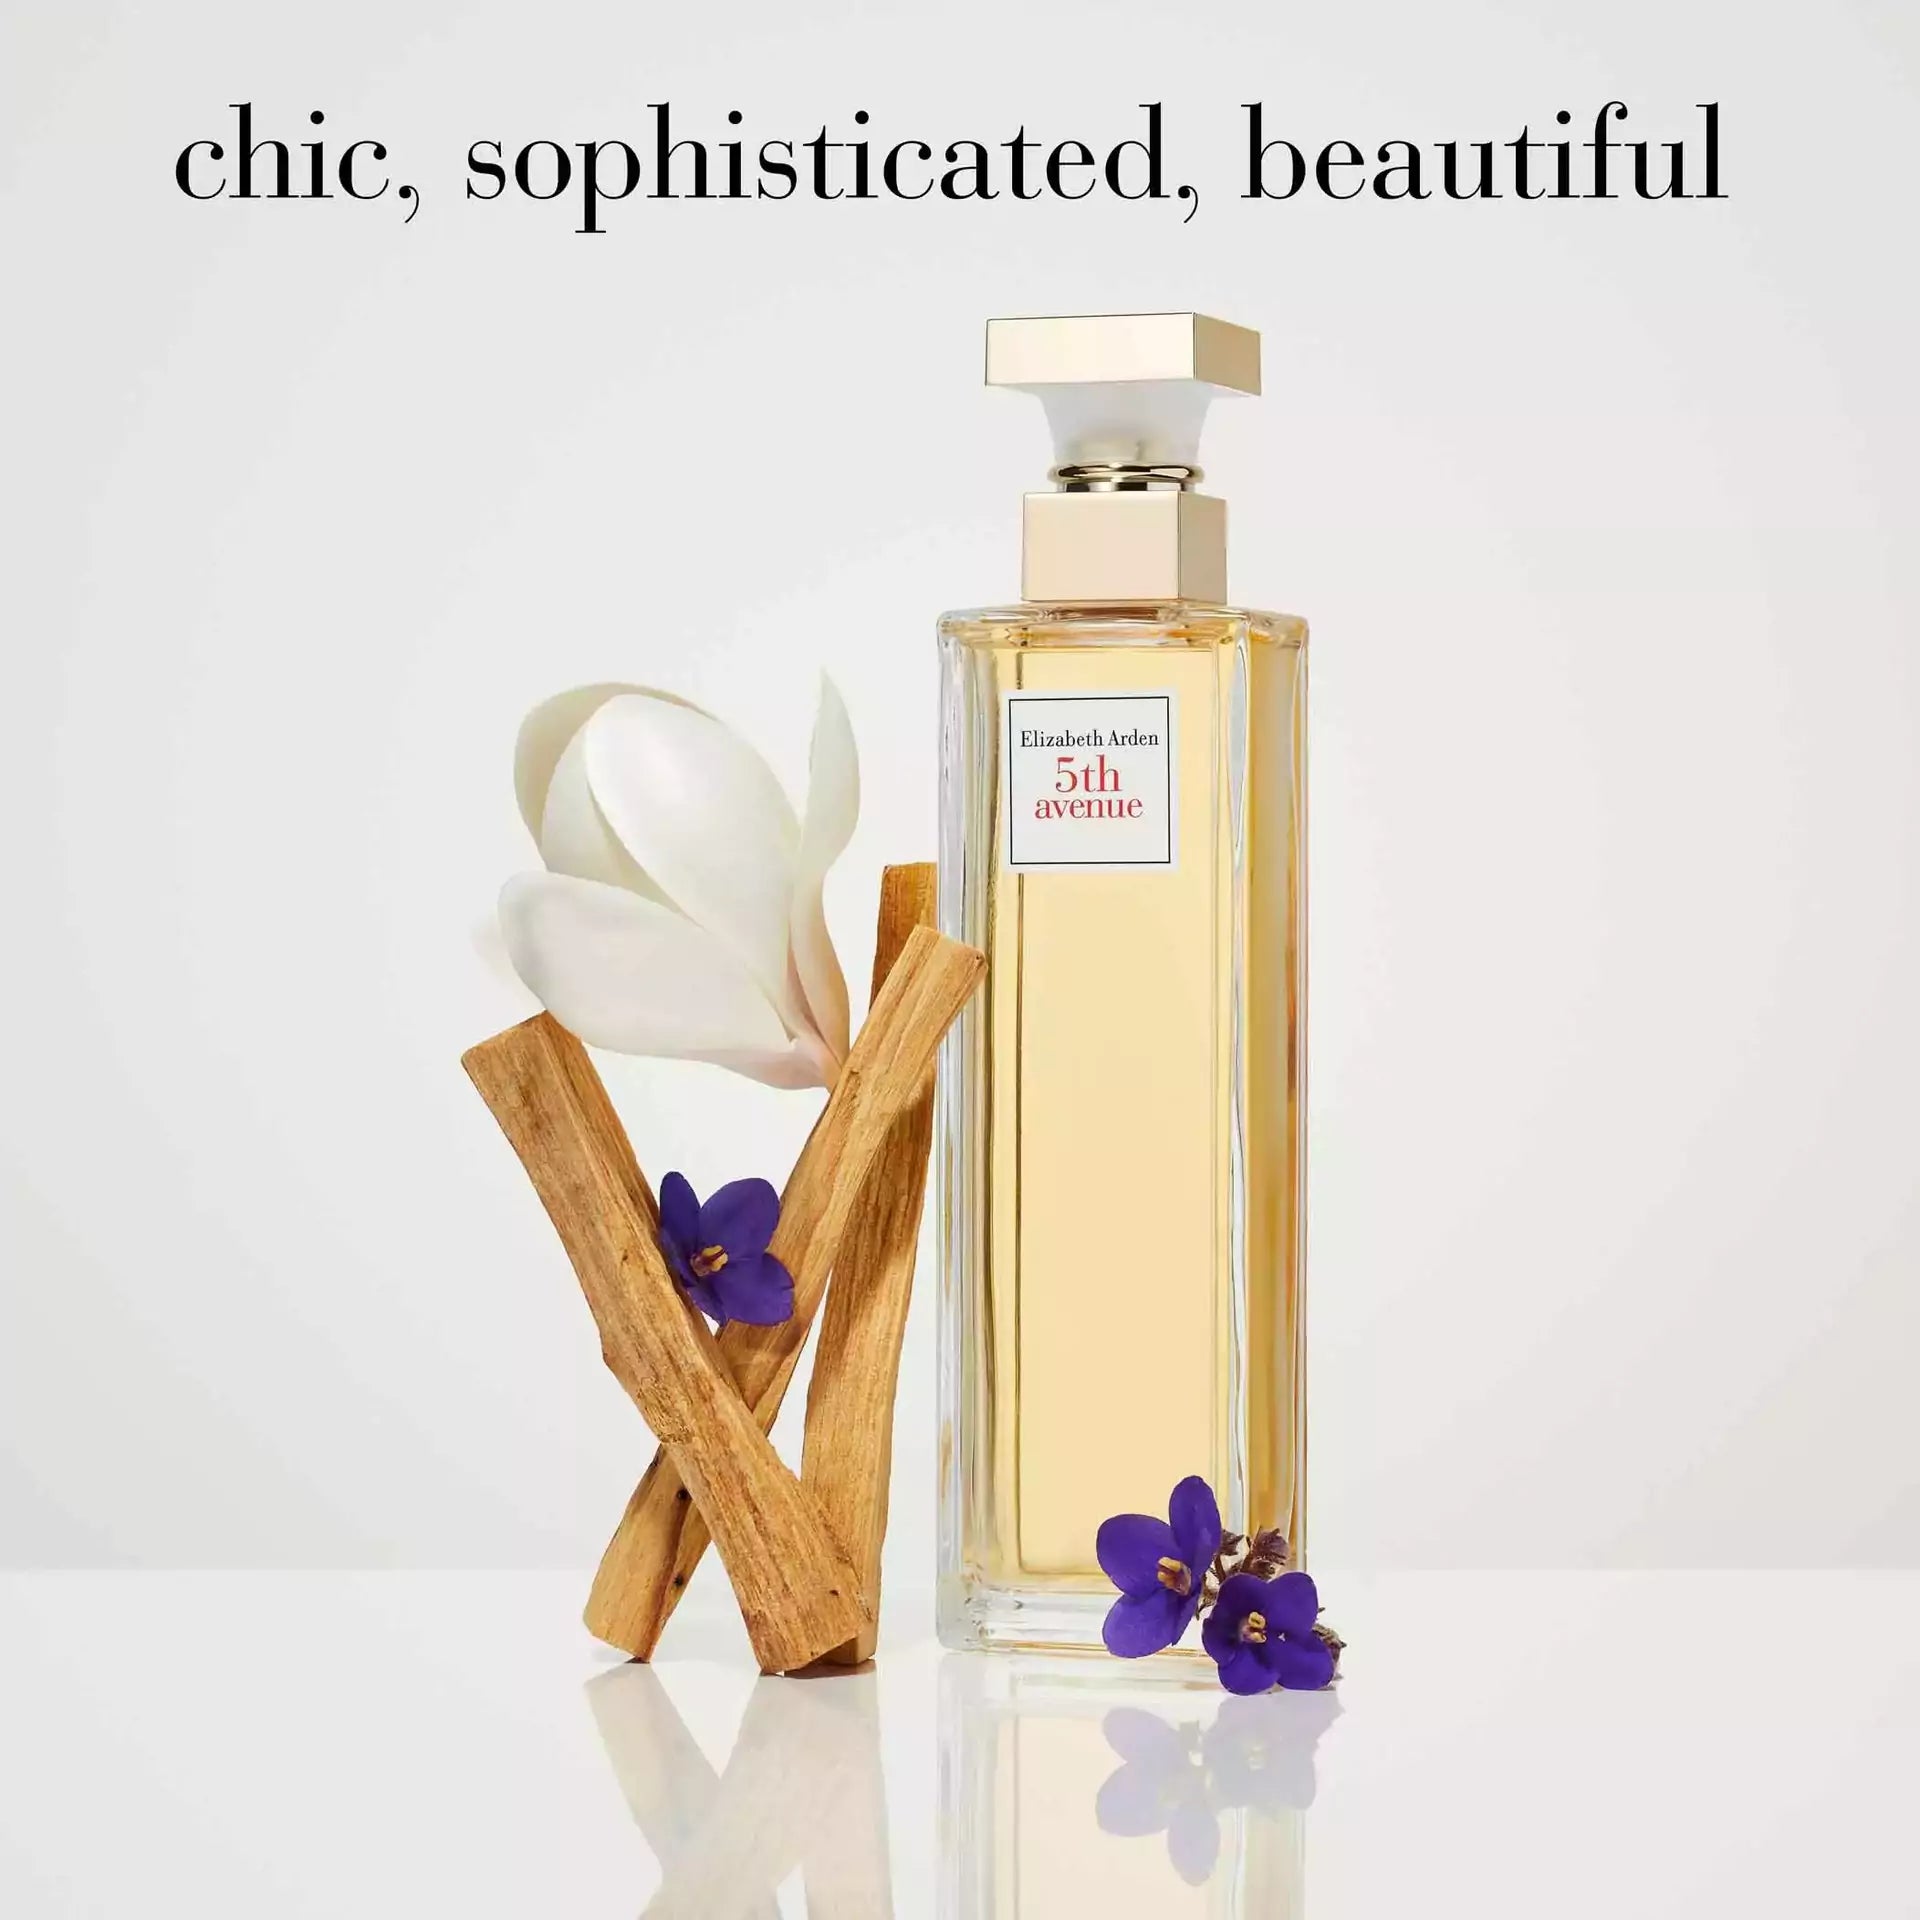 Perfumes and Bath u0026 Body Care Fragrances | Elizabeth Arden